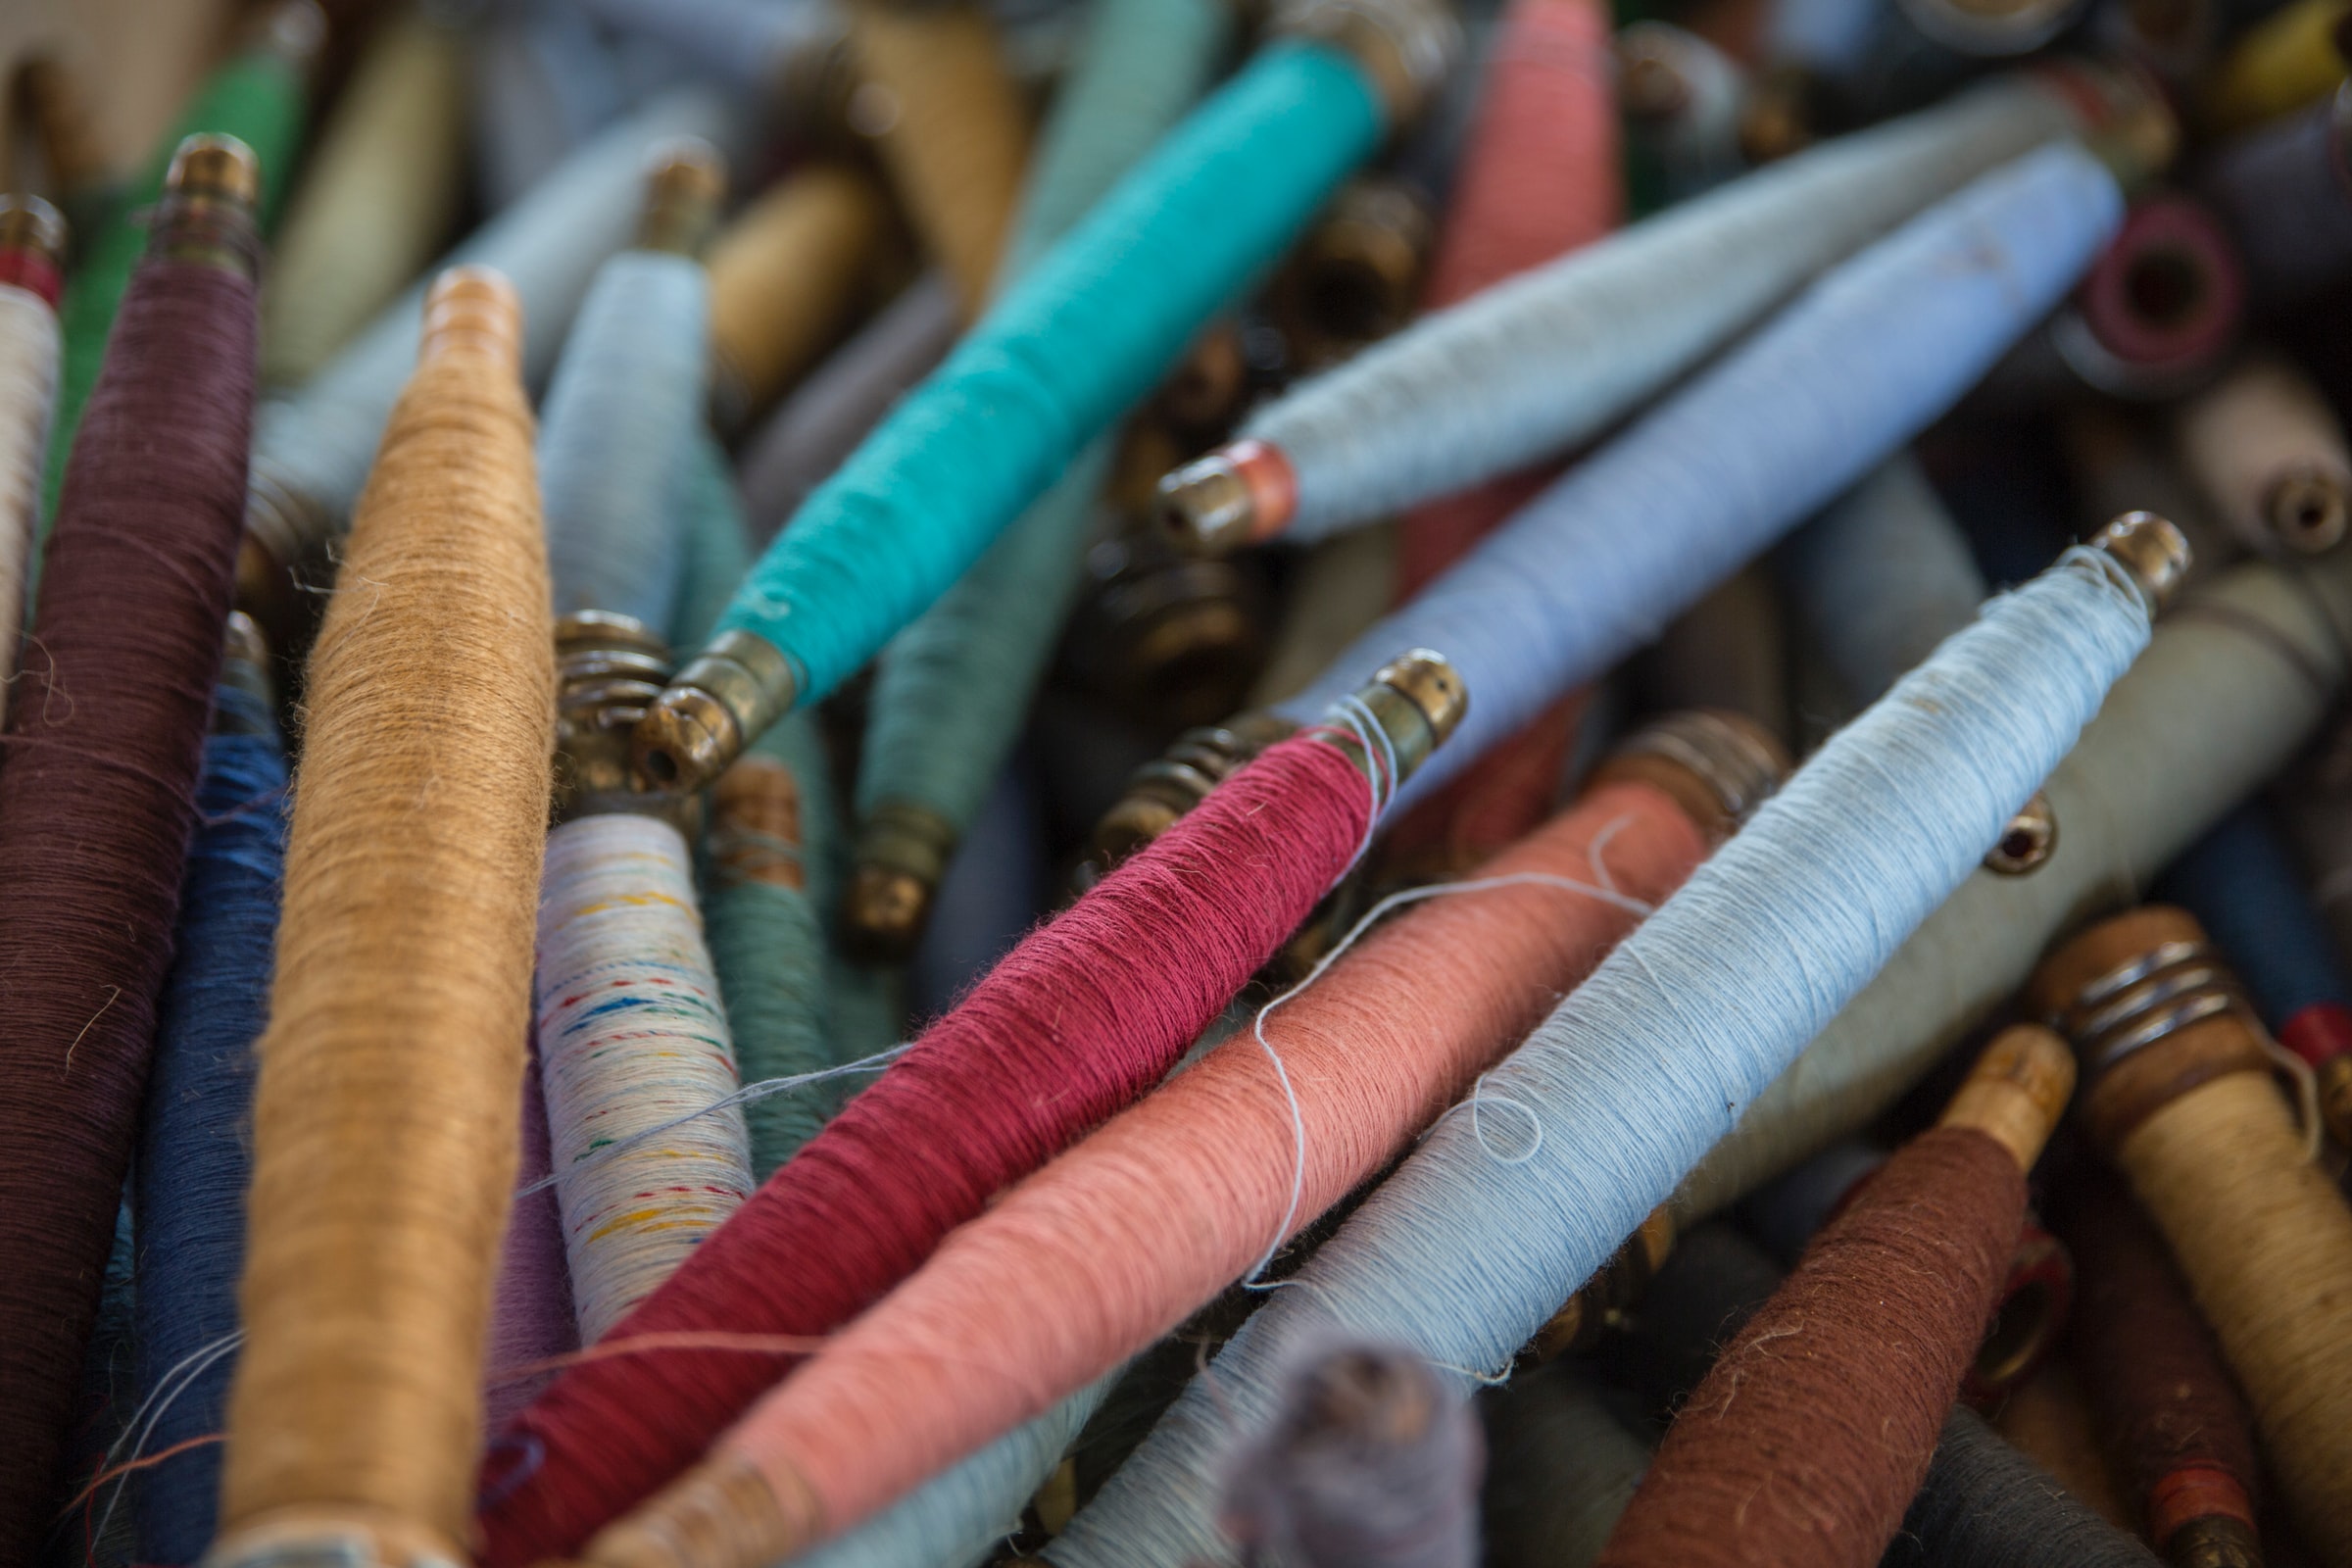 Blazen Een centrale tool die een belangrijke rol speelt Erfenis Raadpleging EU-strategie voor duurzaam textiel – HNP